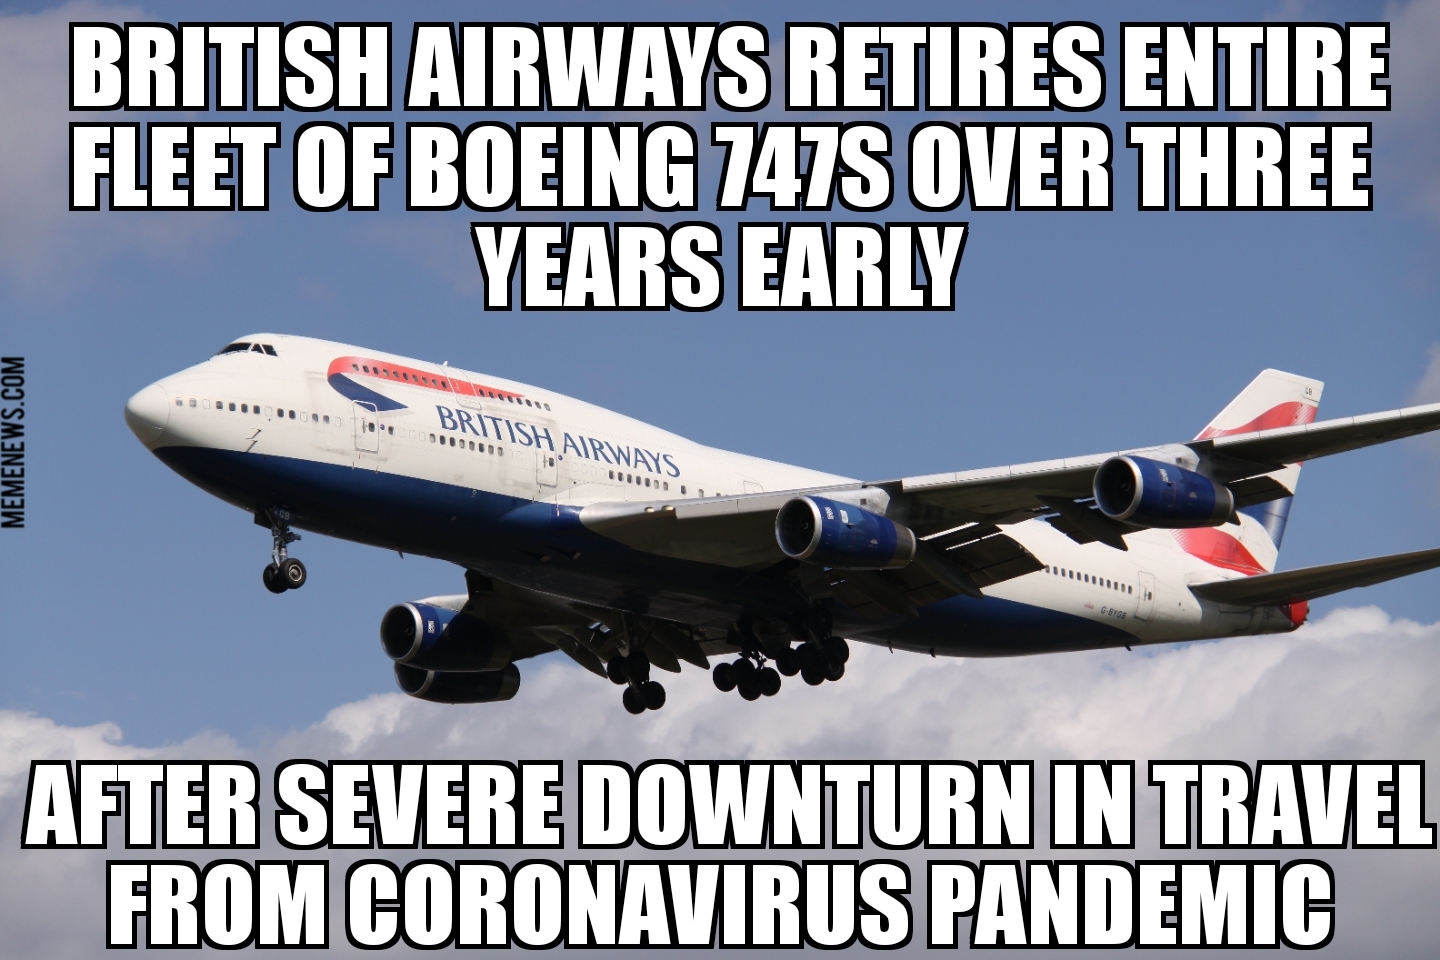 British Airways to retire entire 747 fleet